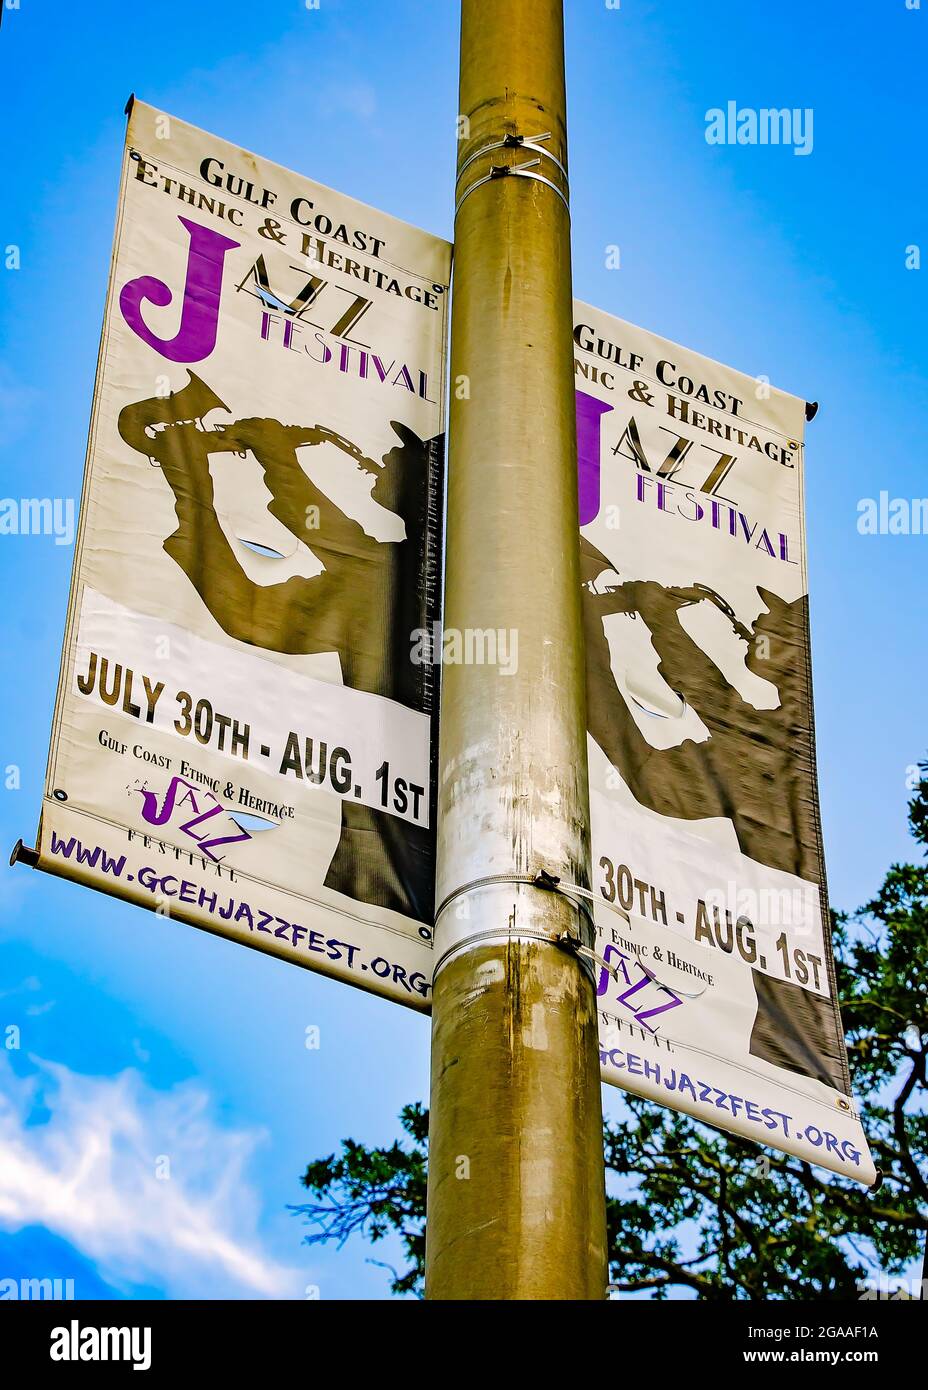 Un cartello pubblicizza il cartello del Gulf Coast Ethnic and Heritage Jazz Festival, 28 luglio 2021, a Mobile, Alabama. Foto Stock